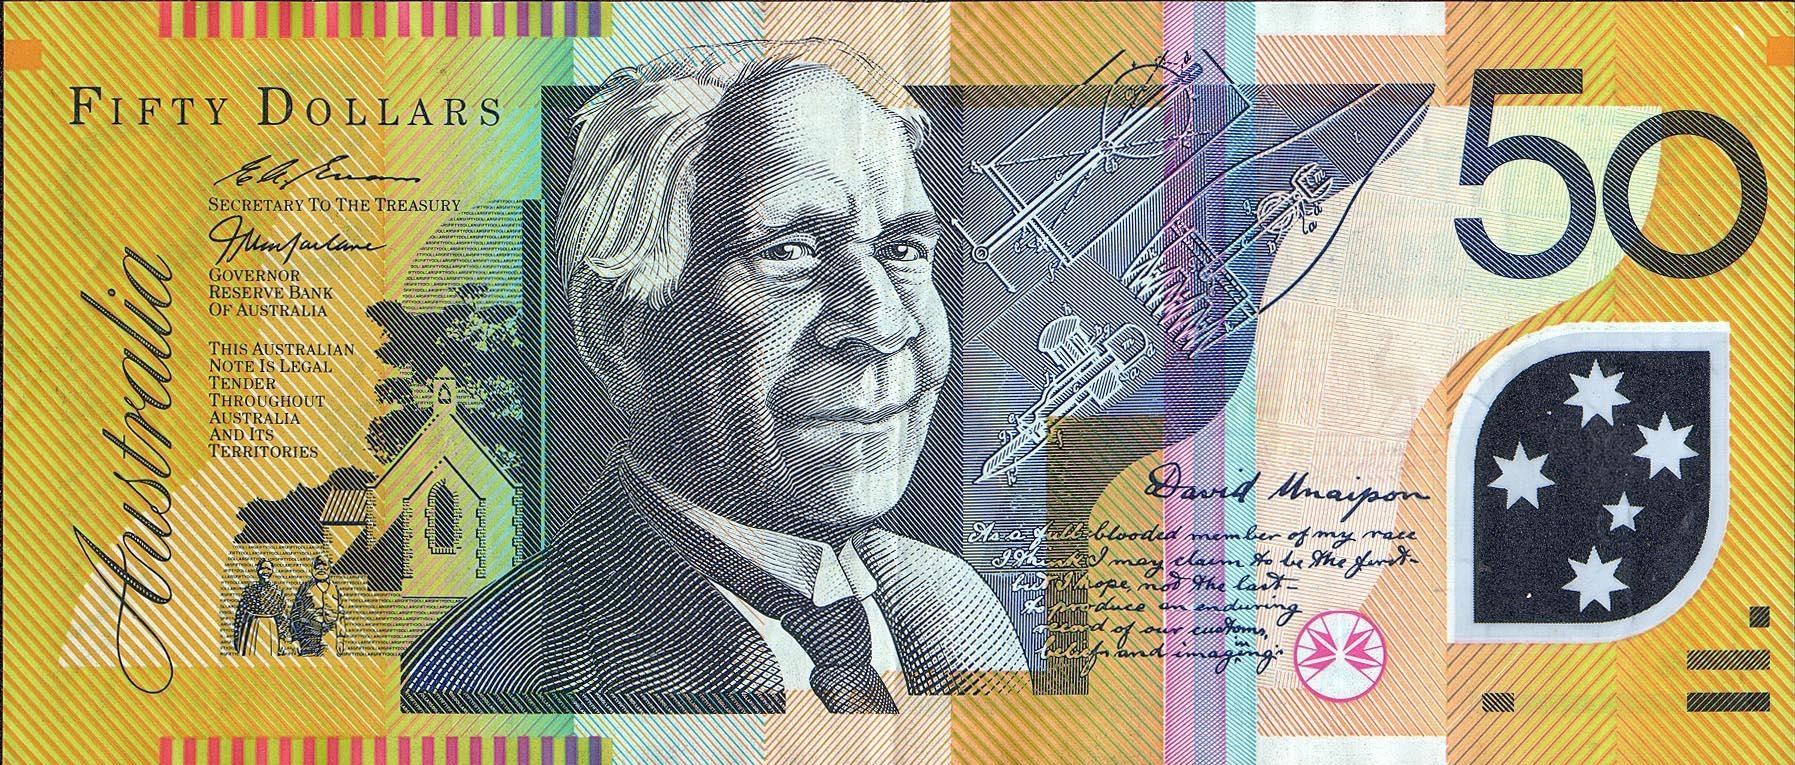 Банкнота австралийского доллара участвует в современных валютных операциях